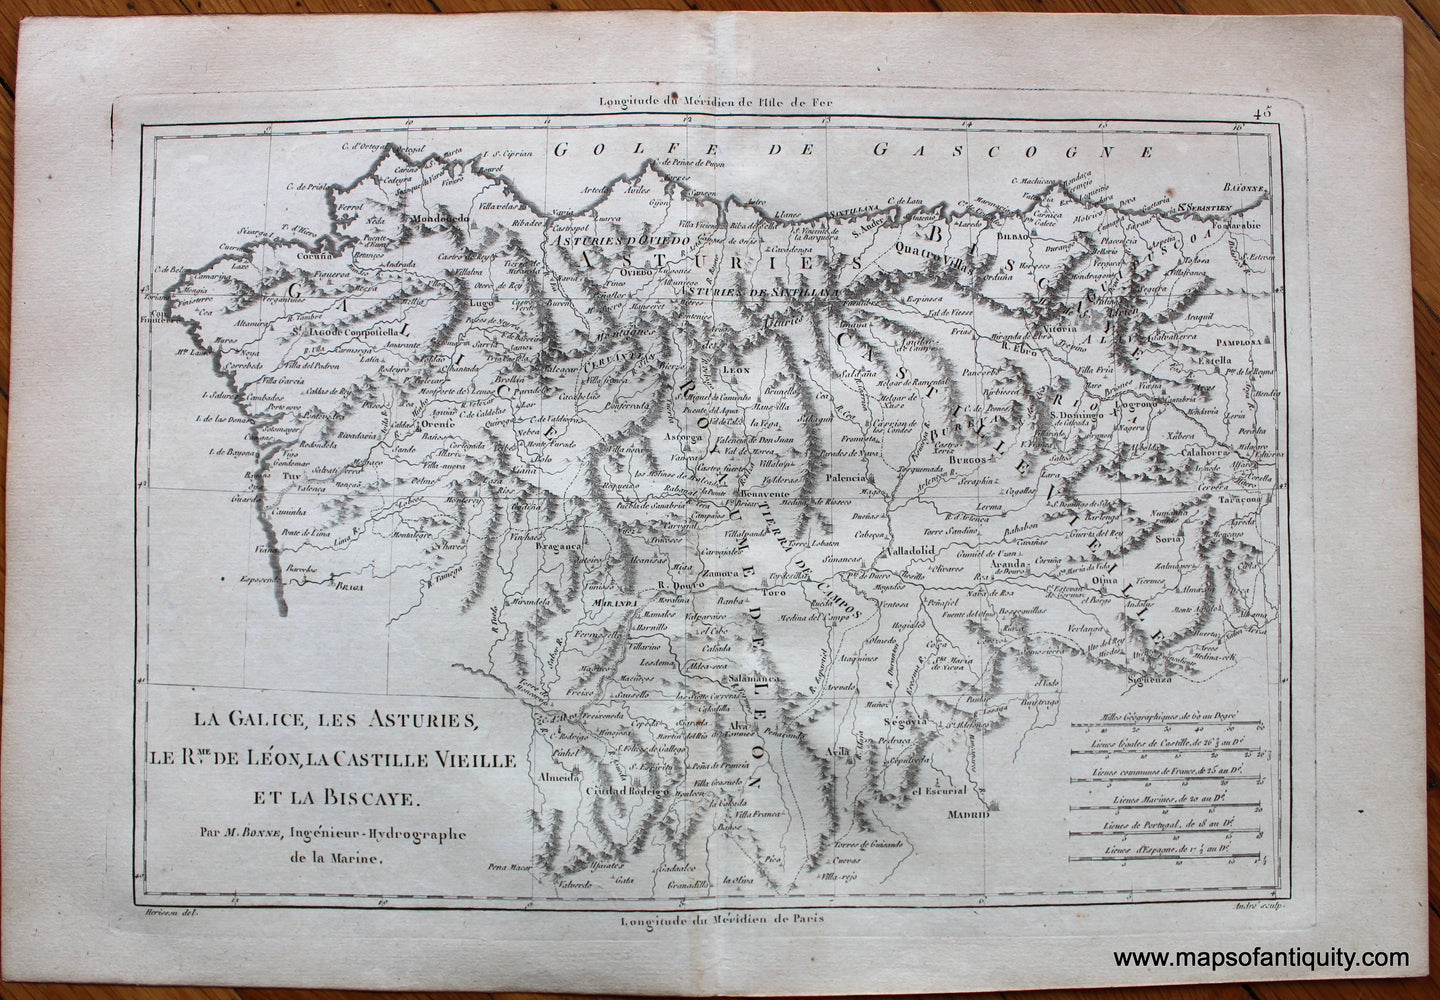 Genuine-Antique-Map-La-Galice-les-Asturies-le-Rme.-De-Leon-la-Castille-vieille-et-la-Biscaye.-Europe-Spain-&-Portugal-1787-Bonne-and-Desmarest-Maps-Of-Antiquity-1800s-19th-century